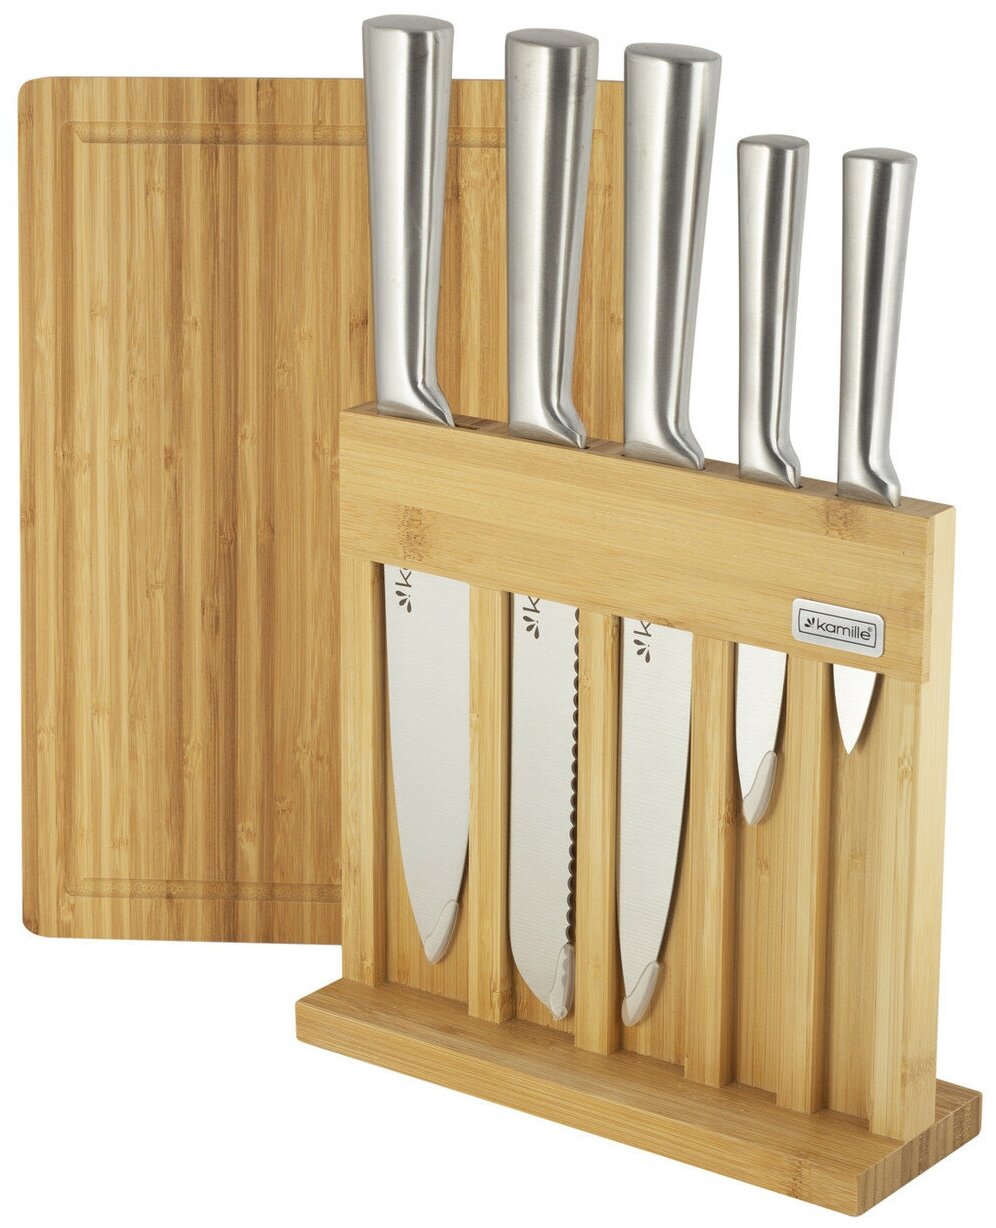 Набор кухонных ножей из нержавеющей стали на подставке Kamille KM-5168 (5 ножей + досточка) оптом - Фото №5